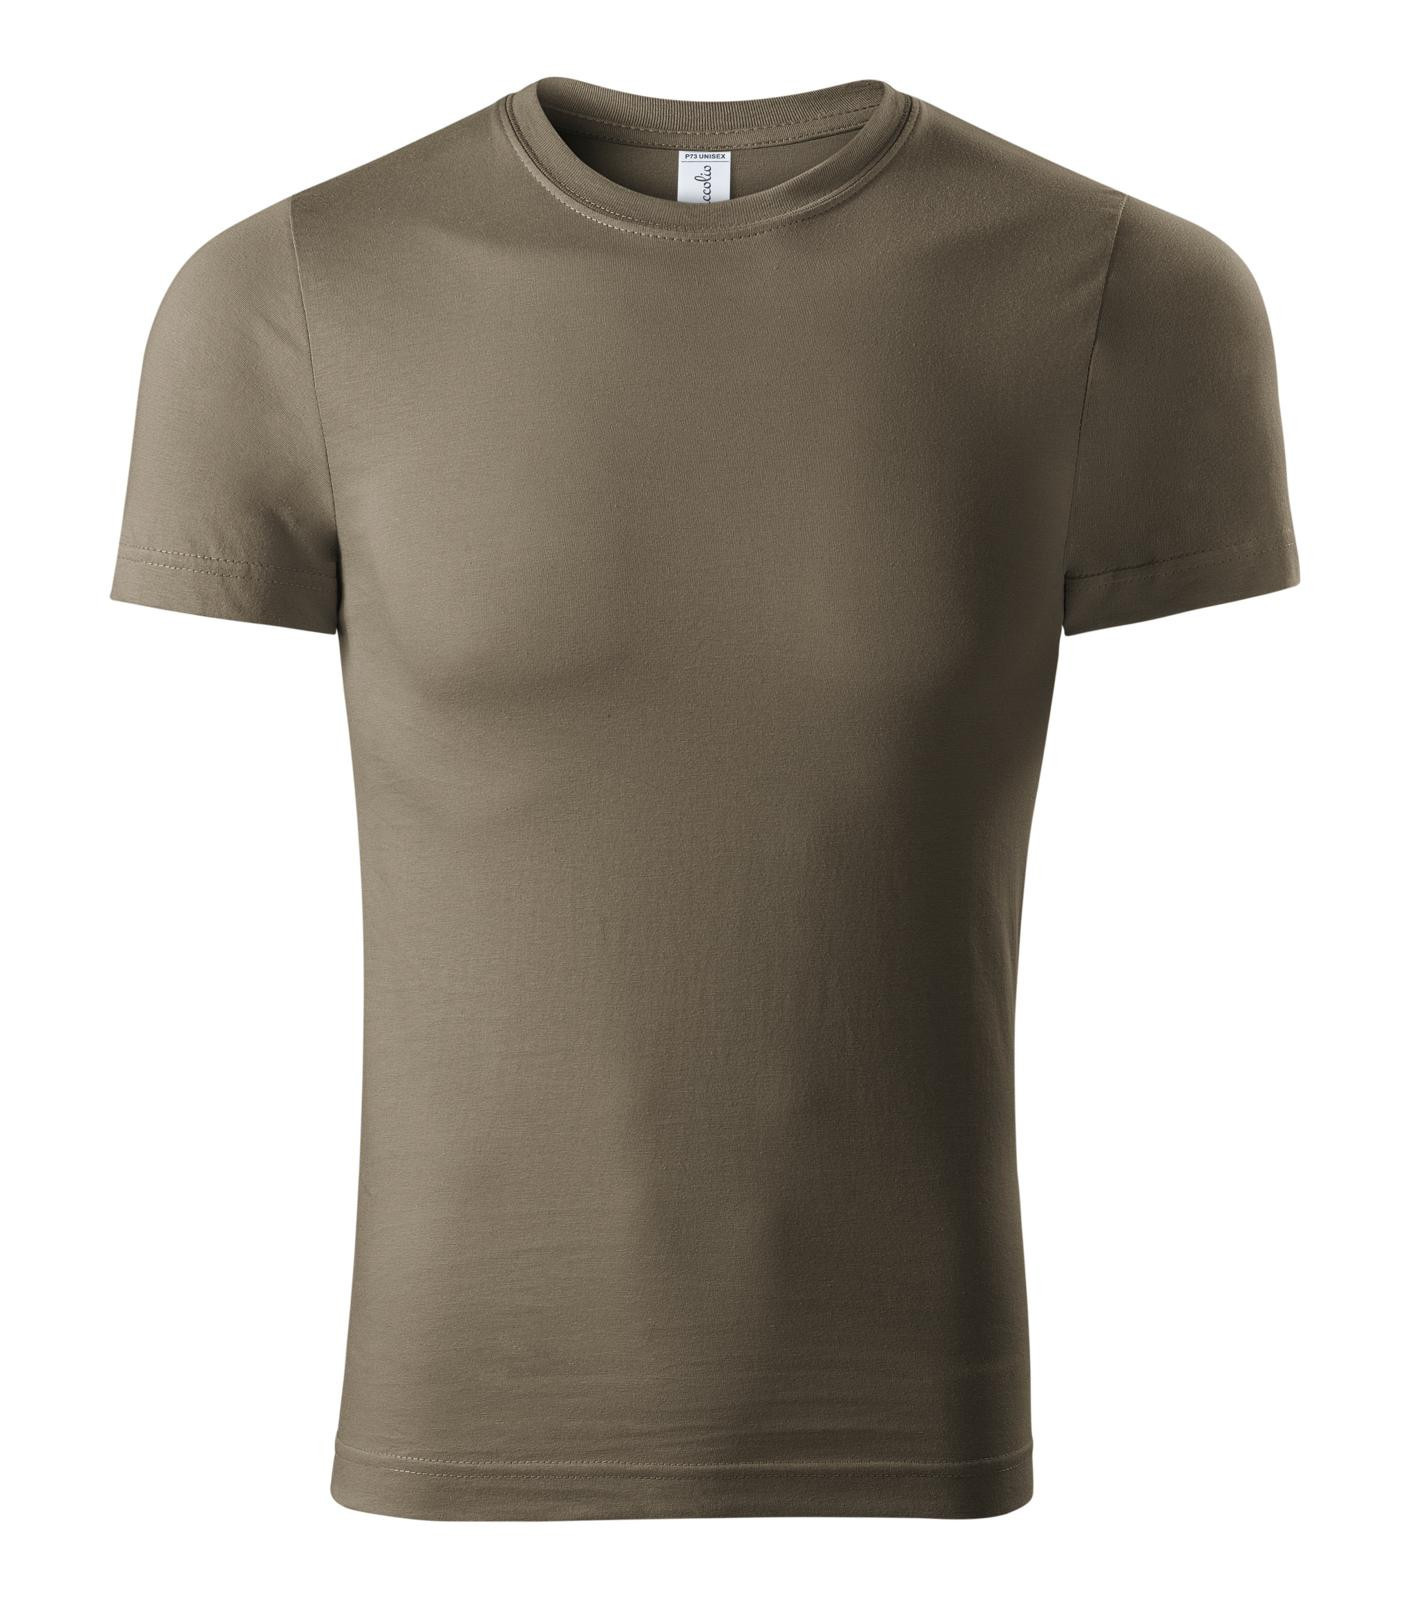 Unisex tričko Piccolio Paint P73 - veľkosť: 4XL, farba: army